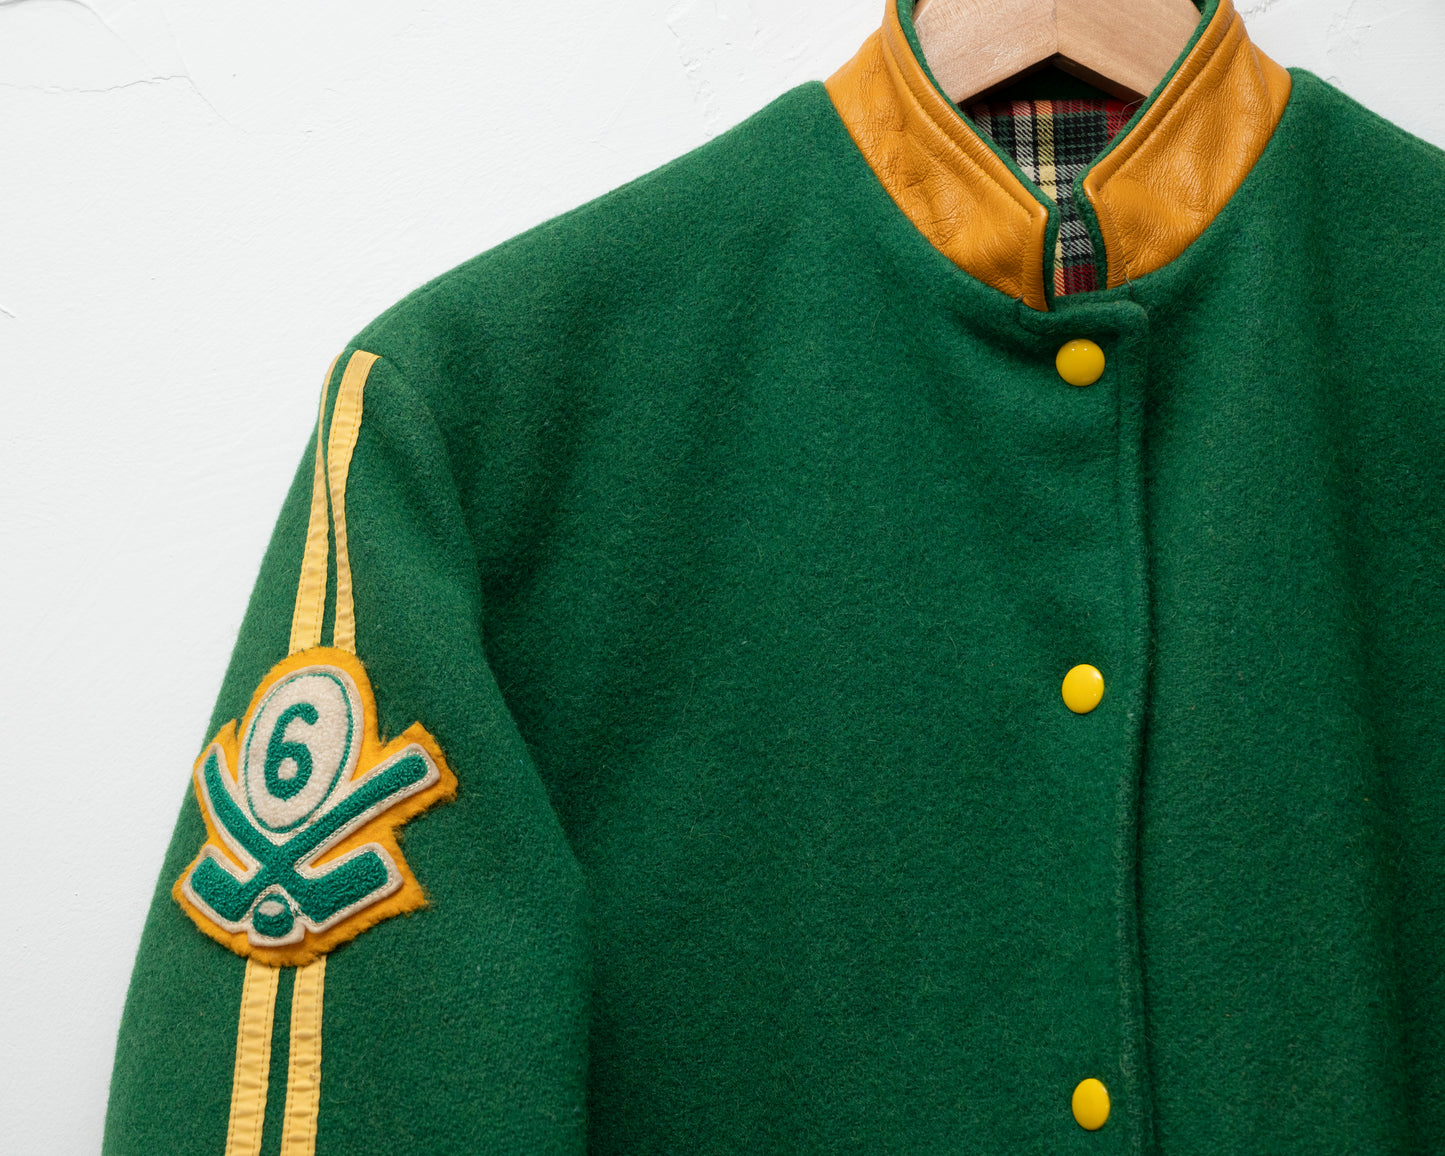 Green wool varsity jacket - small/med